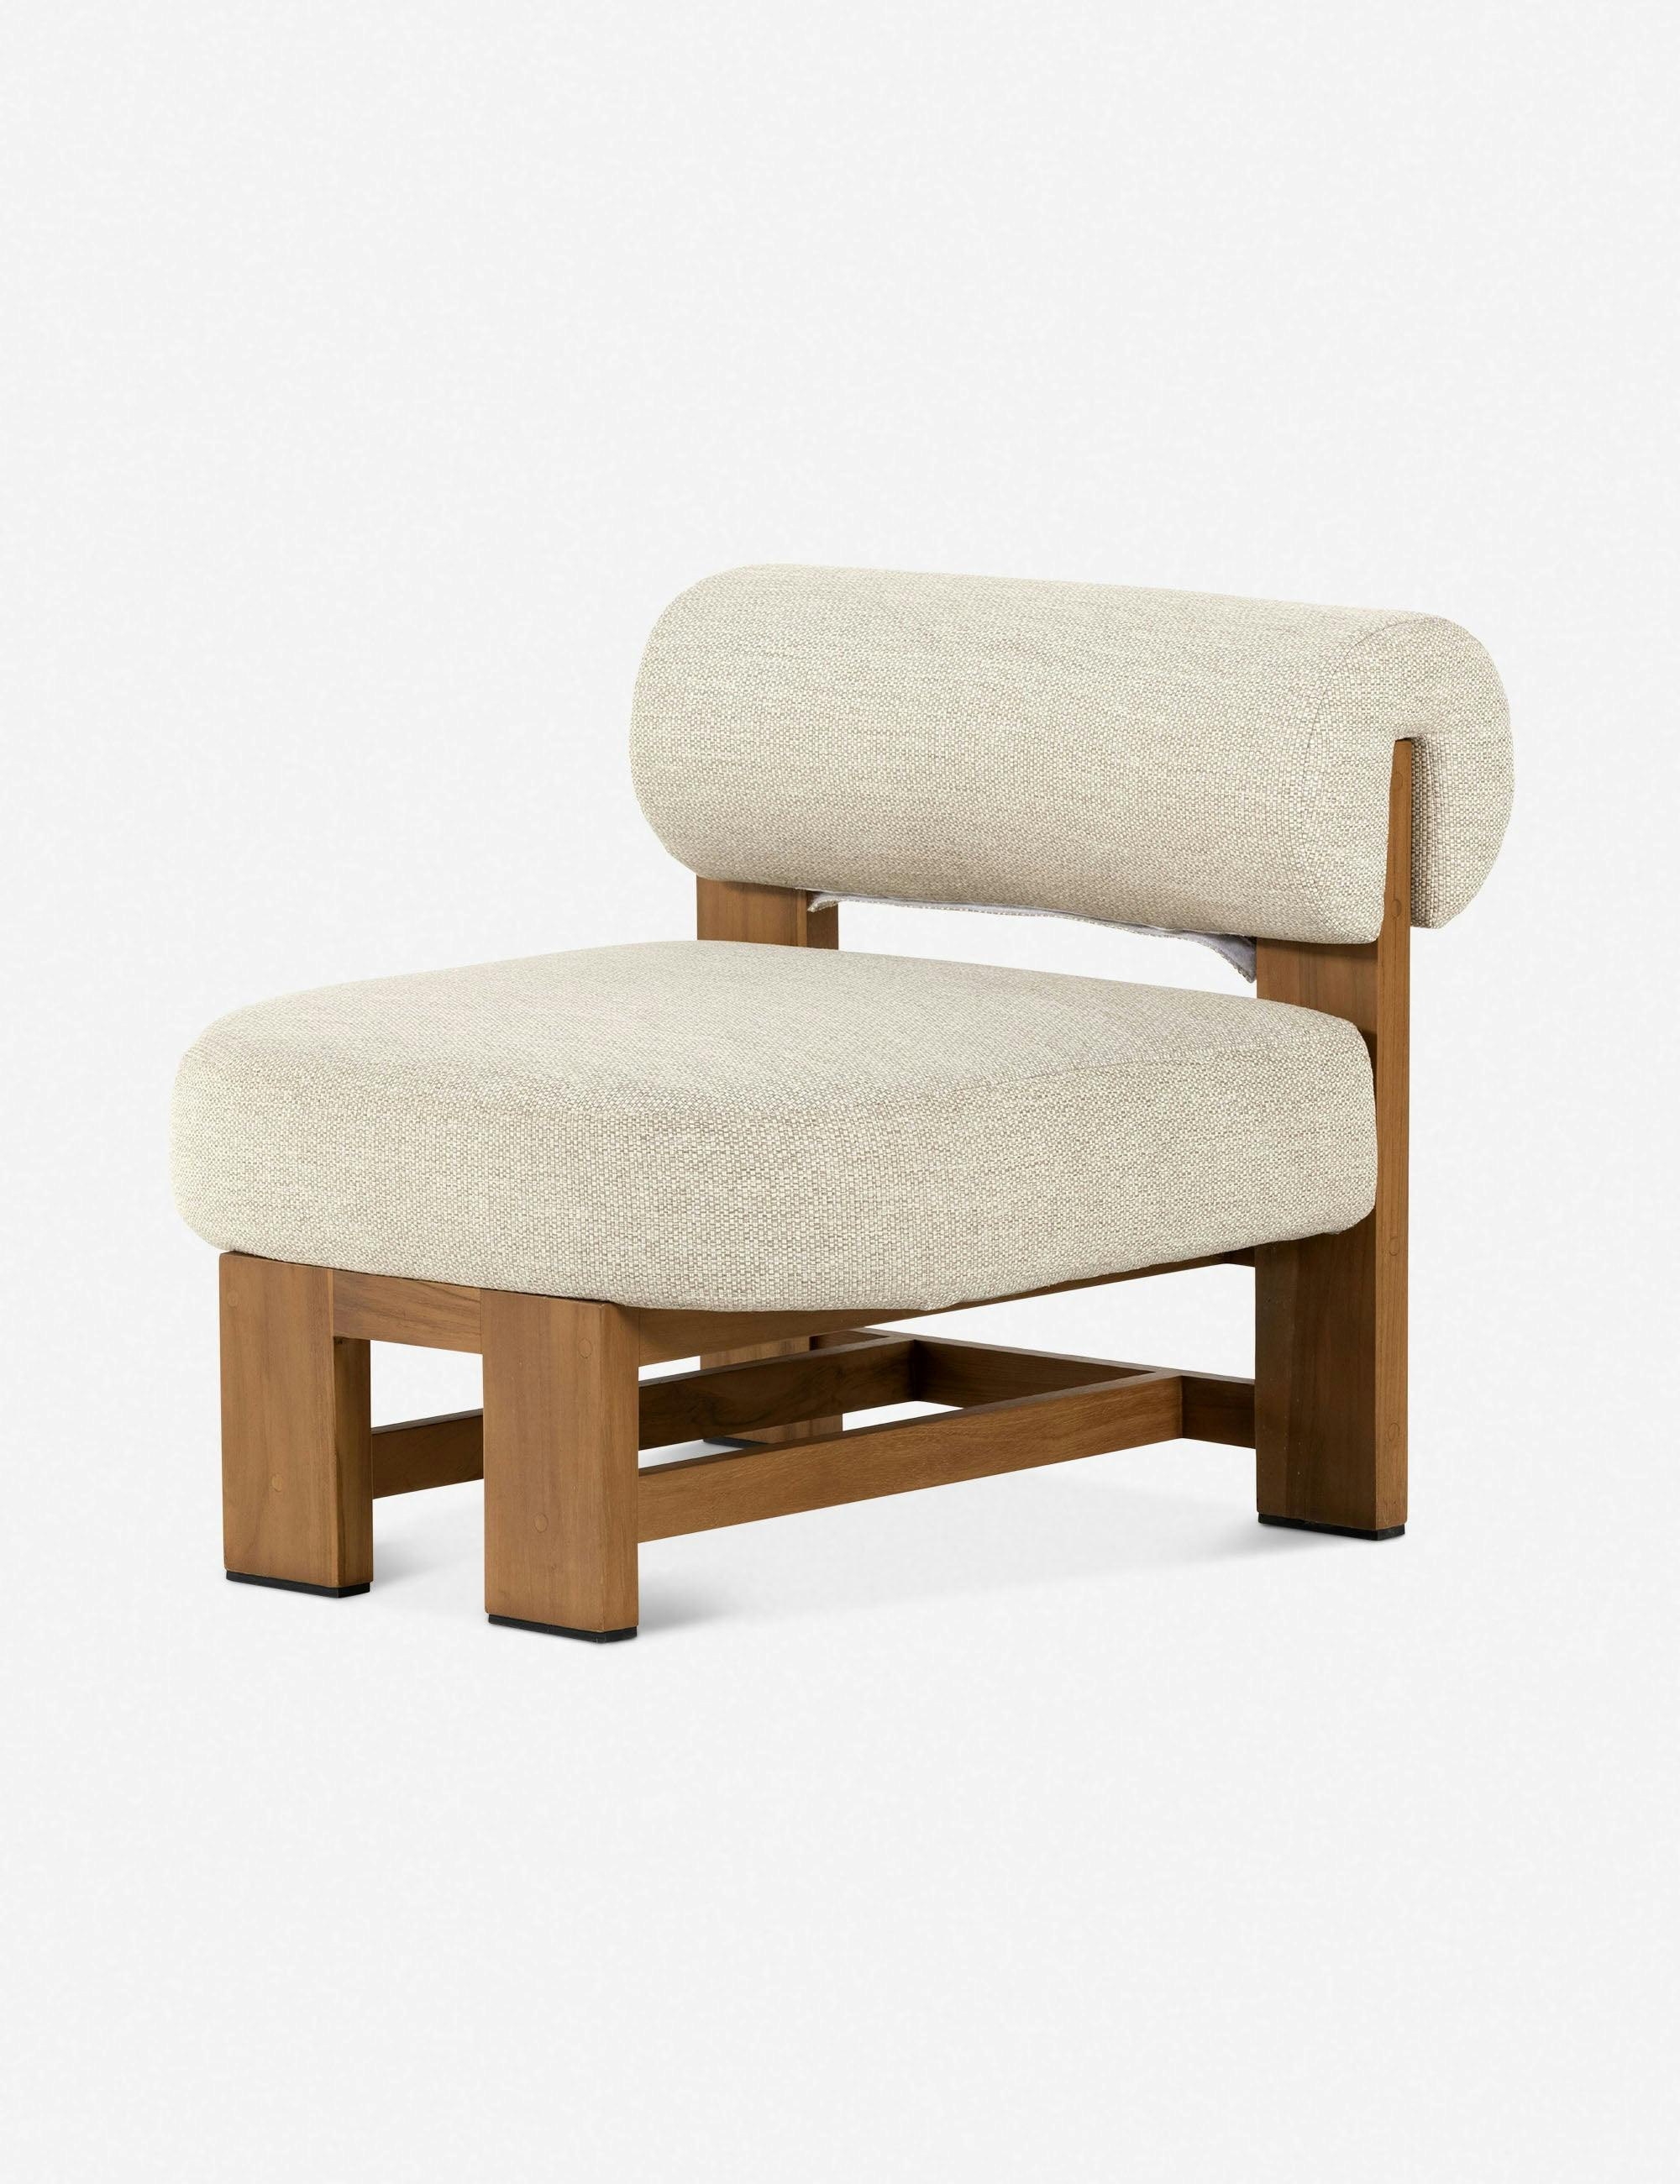 Nellie Beige Upholstered Teak Wood Indoor/Outdoor Accent Chair